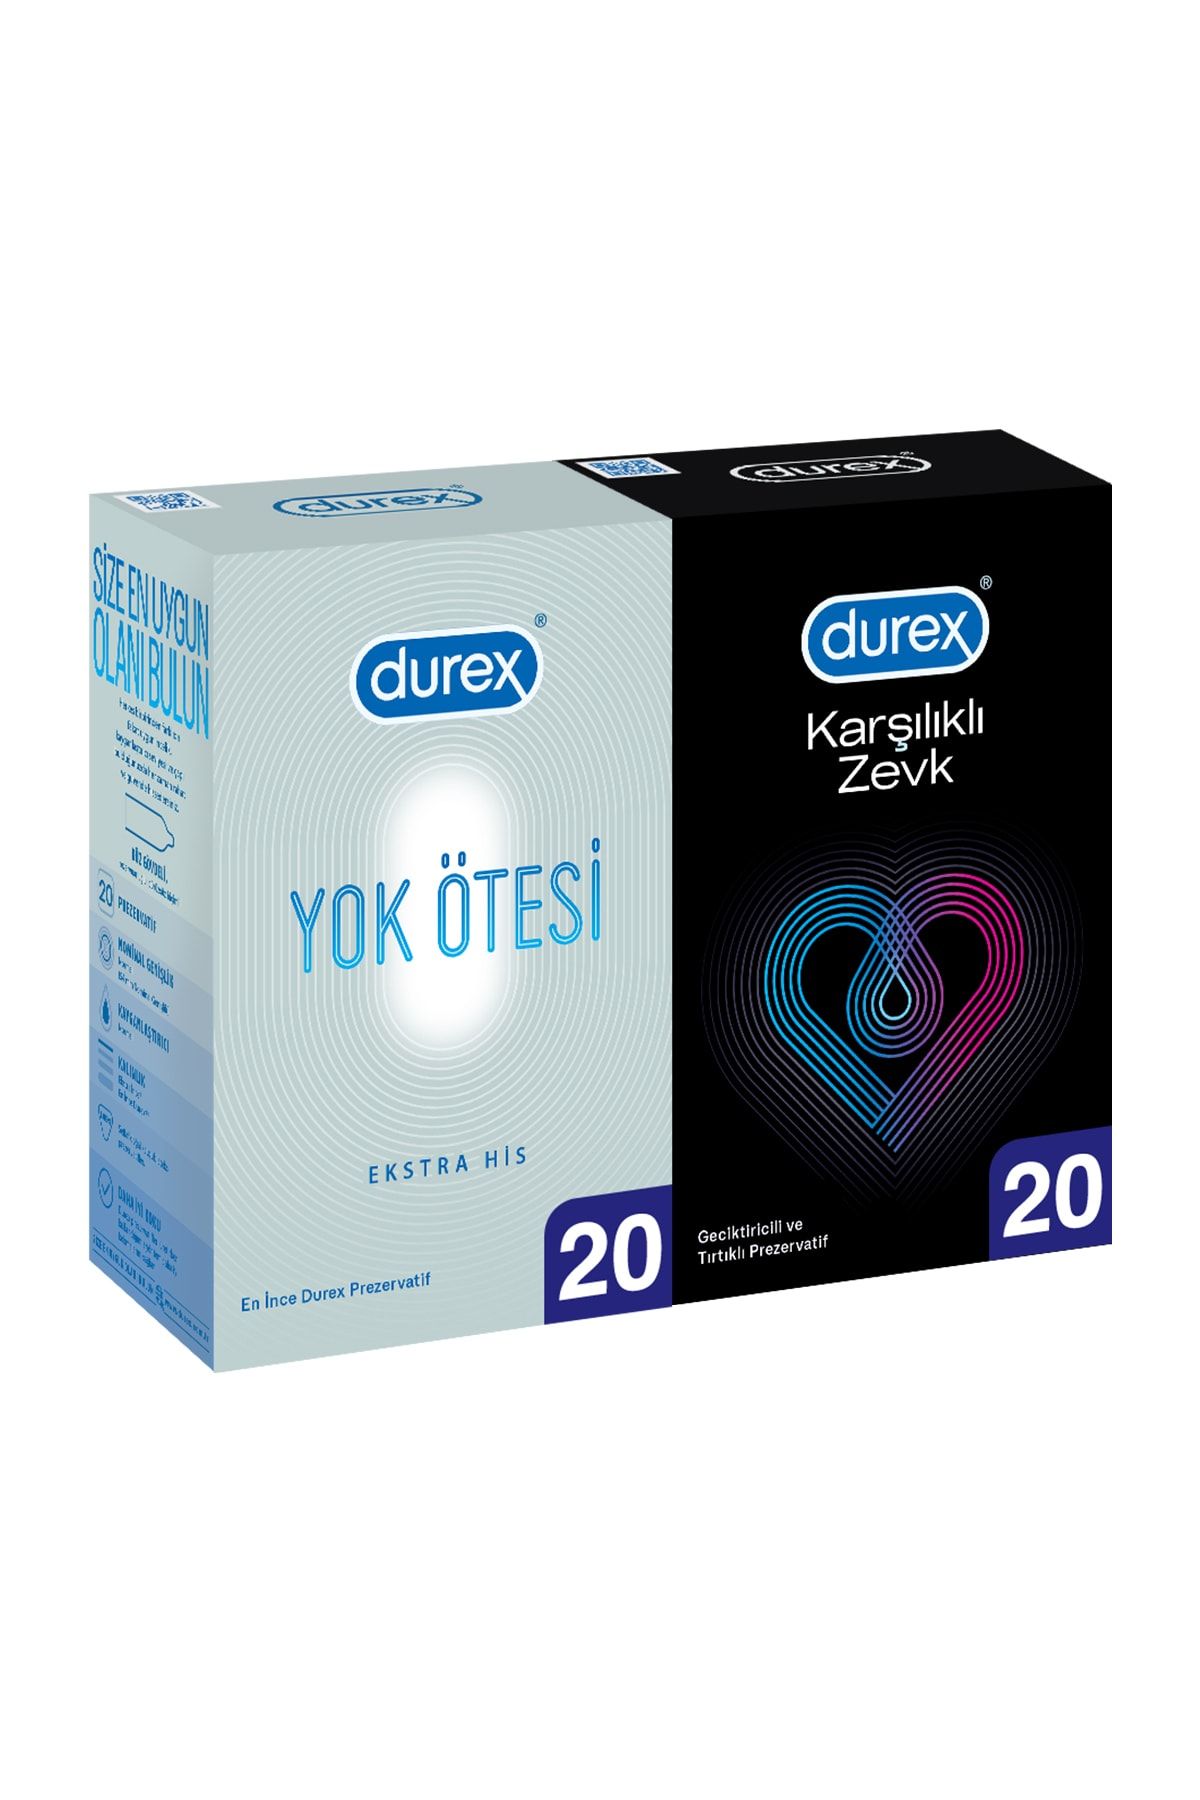 Durex Yok Ötesi Ekstra His 20'li + Karşılıklı Zevk li 20'li Prezervatif